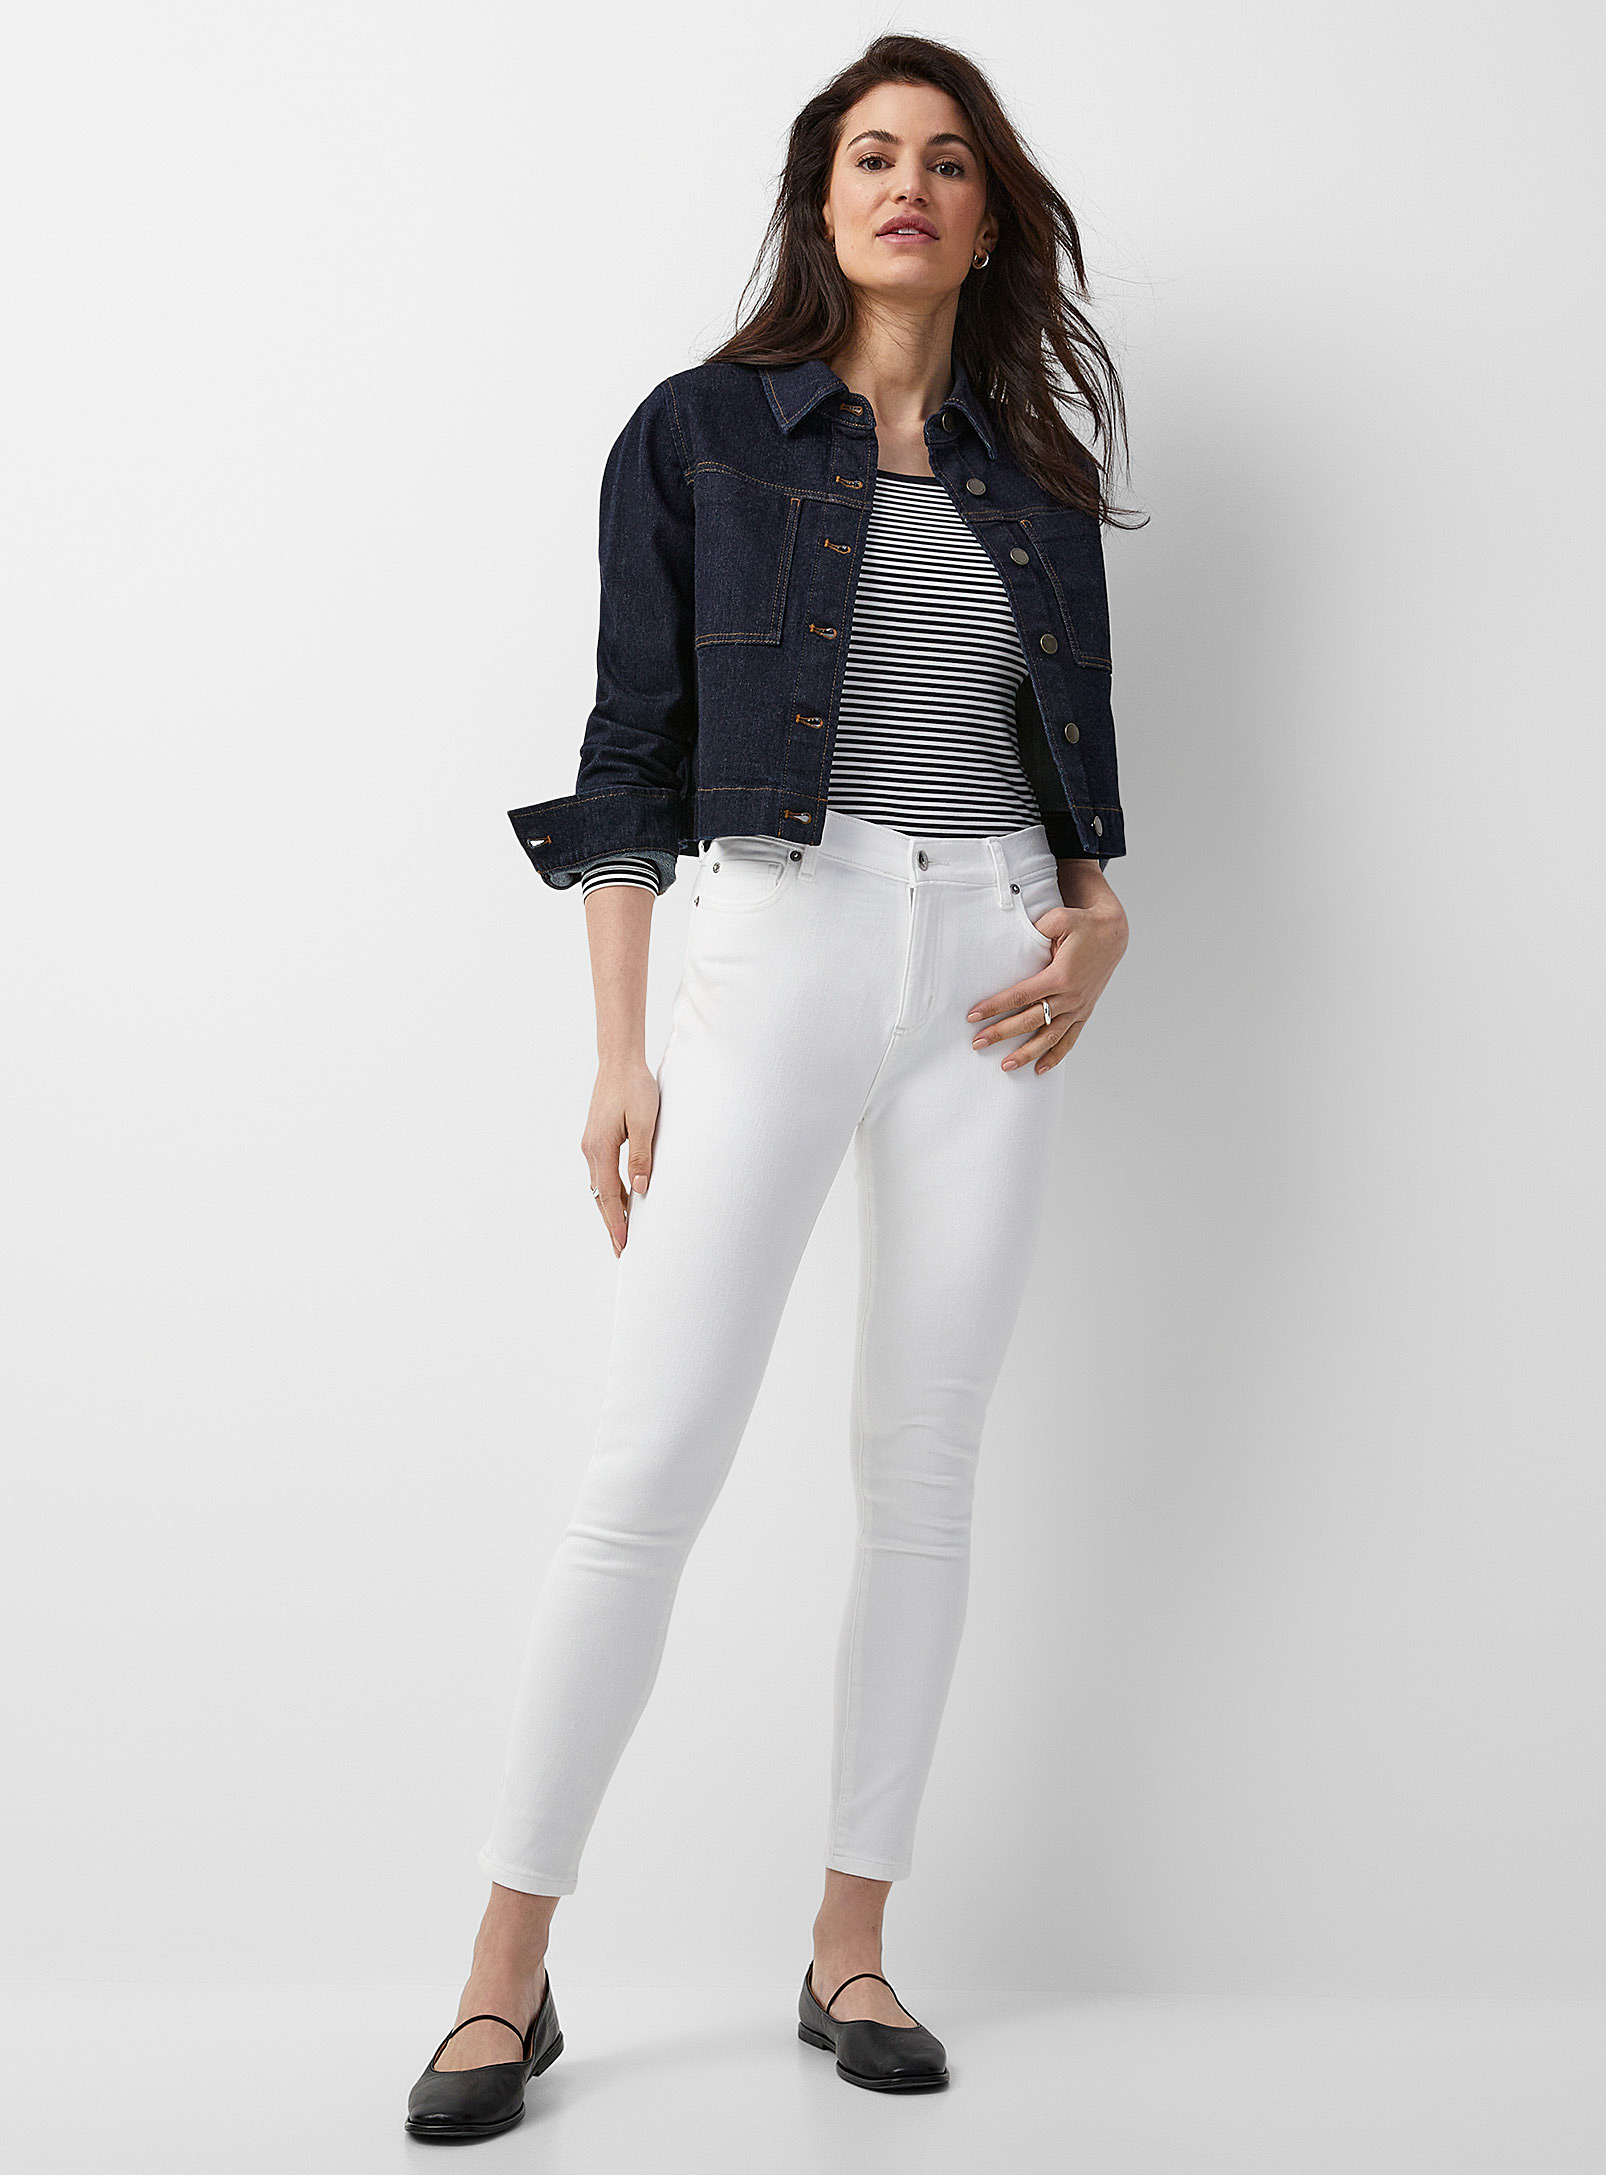 Yoga Jeans - Women's White Rachel skinny jean